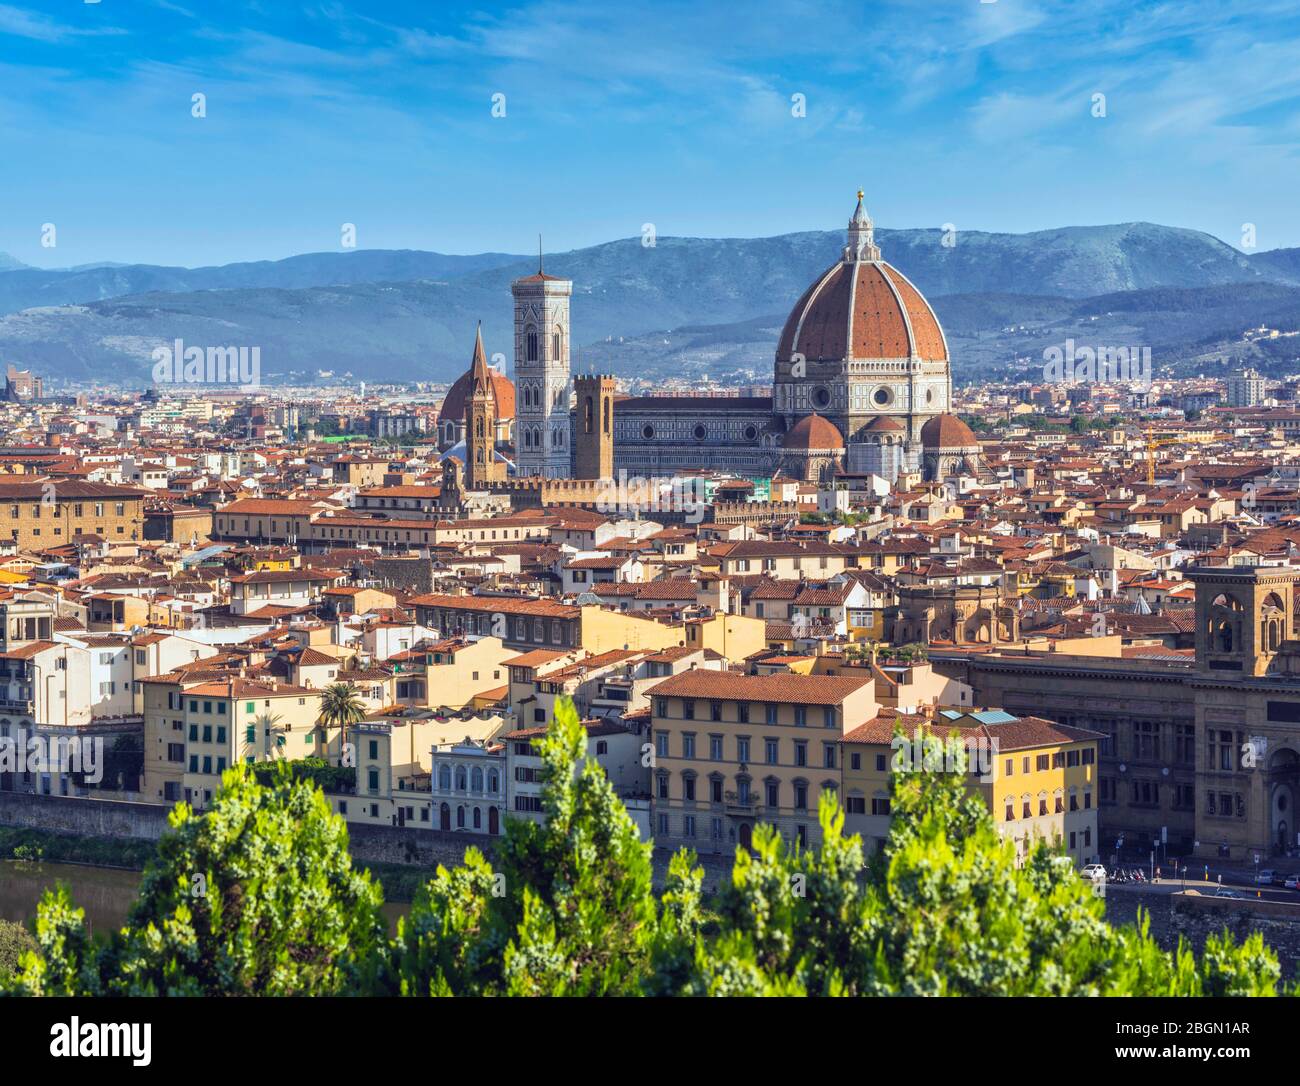 Vista general del Duomo o la catedral. Florencia, Toscana, Italia. El centro histórico de Florencia es un lugar declarado Patrimonio de la Humanidad por la UNESCO Foto de stock